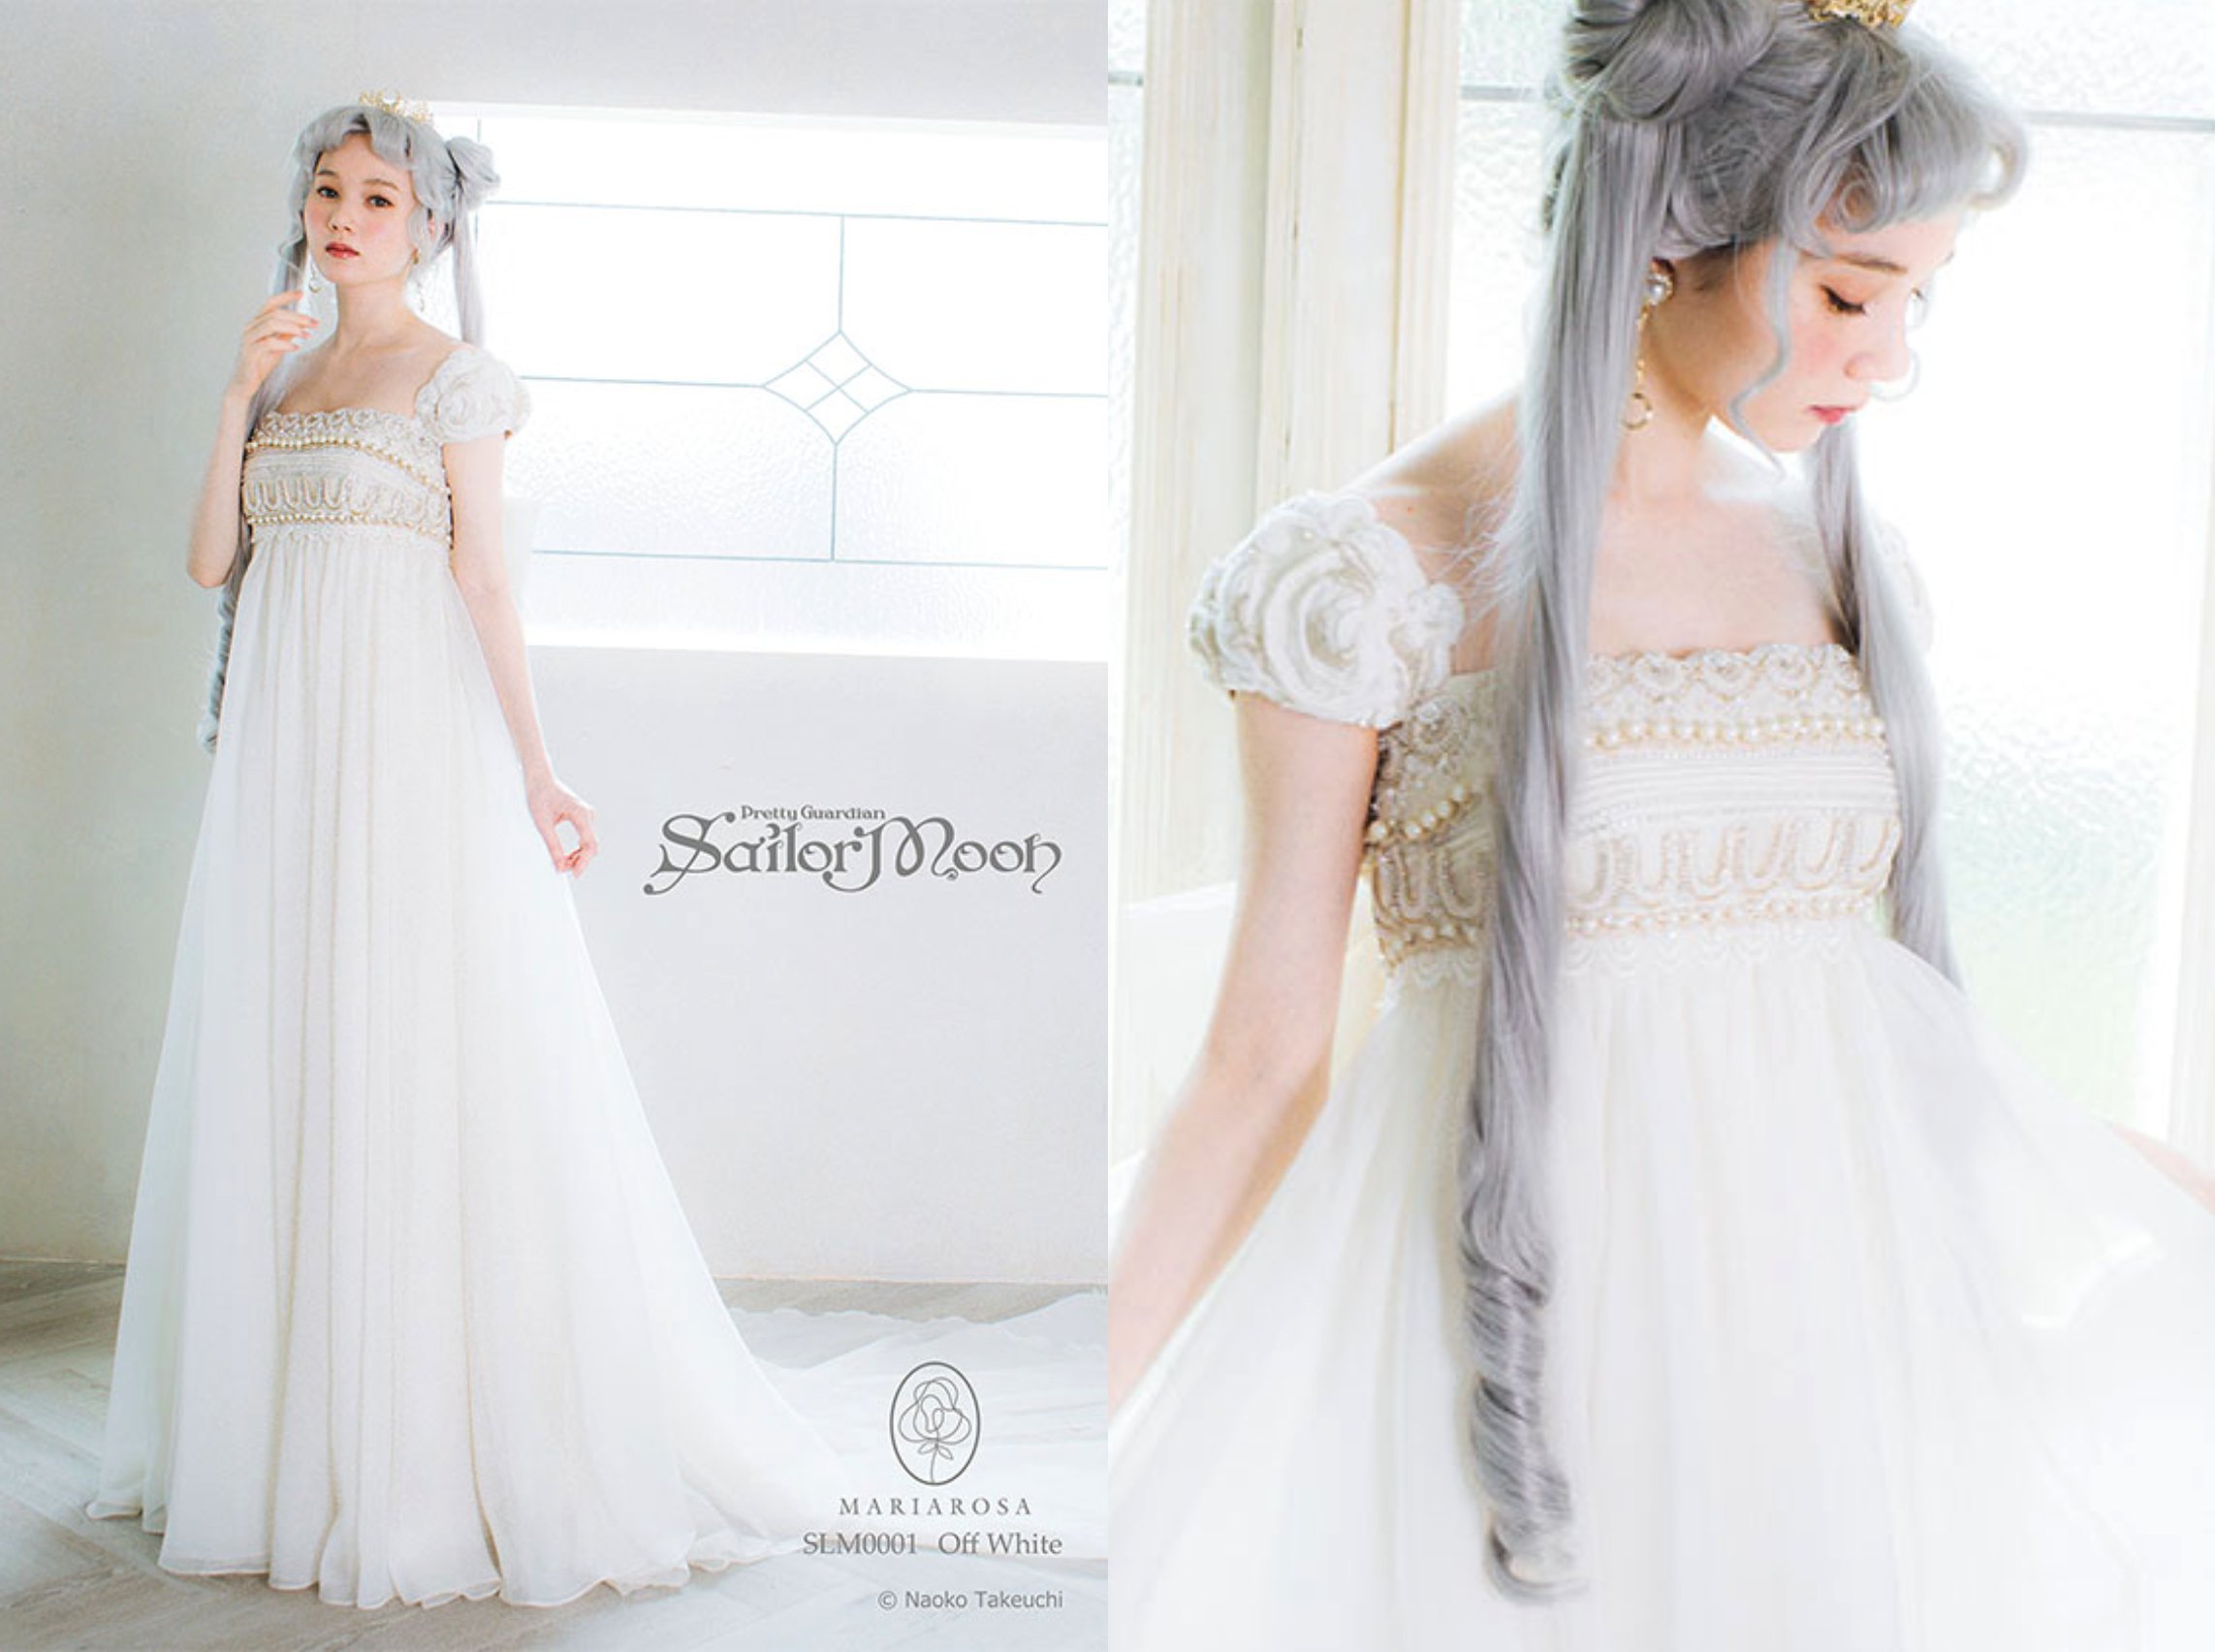 Crean bonitos vestidos de novia inspirados en 'Sailor Moon'